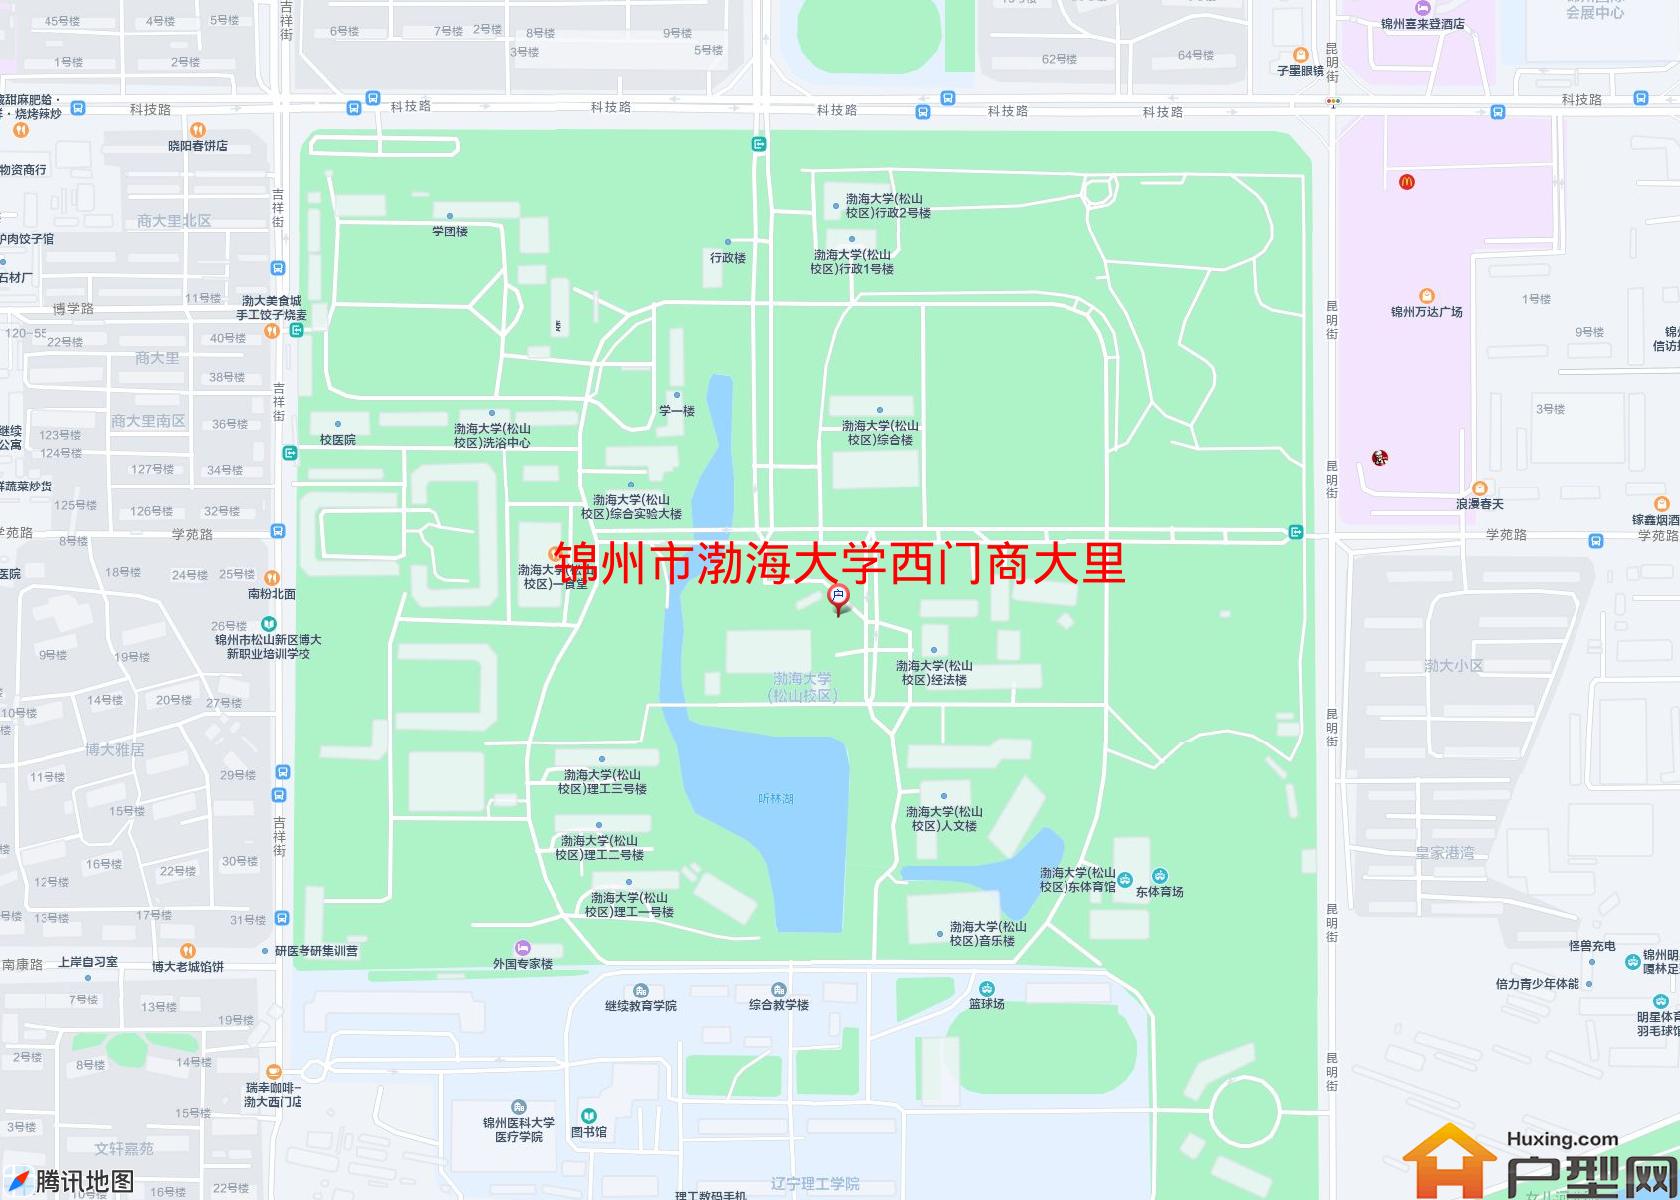 渤海大学西门商大里小区 - 户型网